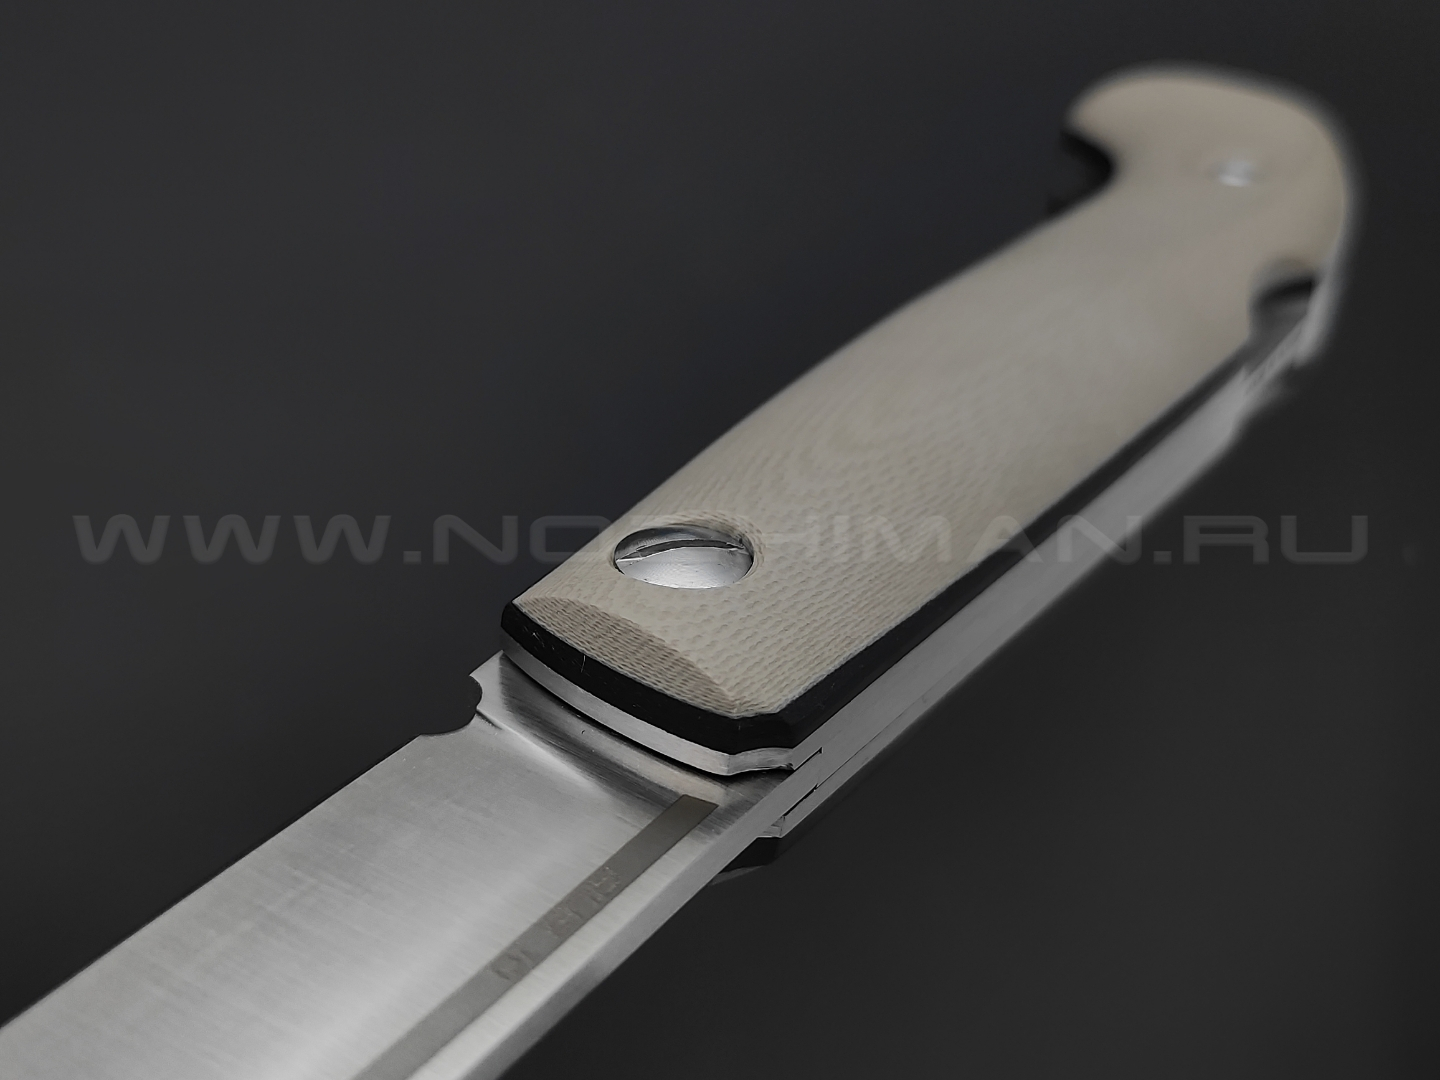 Северная корона складной нож Fin-track сталь Aus10 satin, рукоять G10 tan